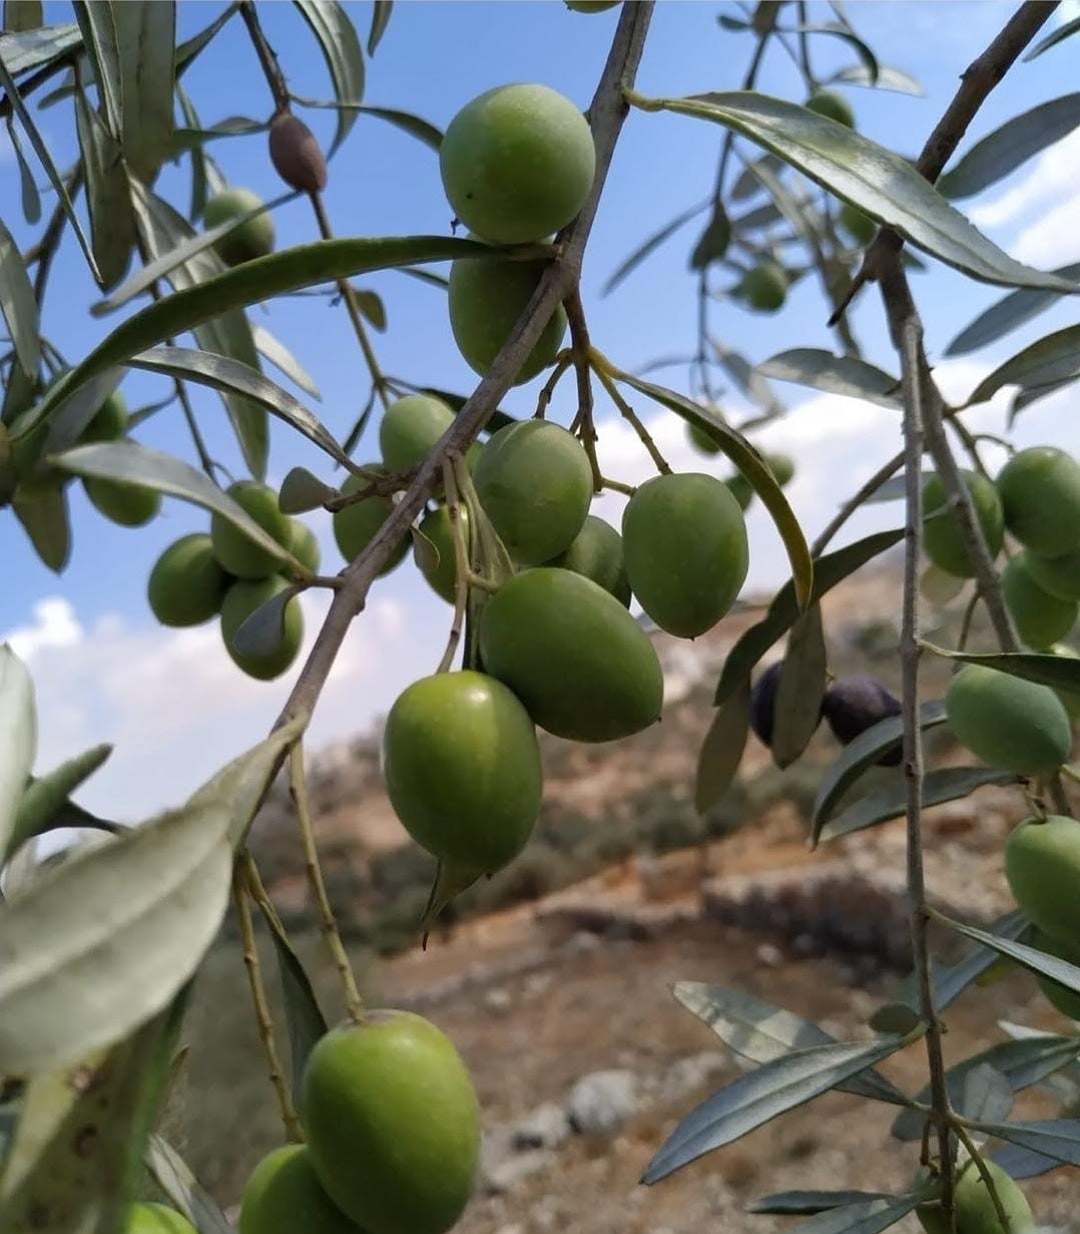 Beit Hanina Olive Oil 1 gallon